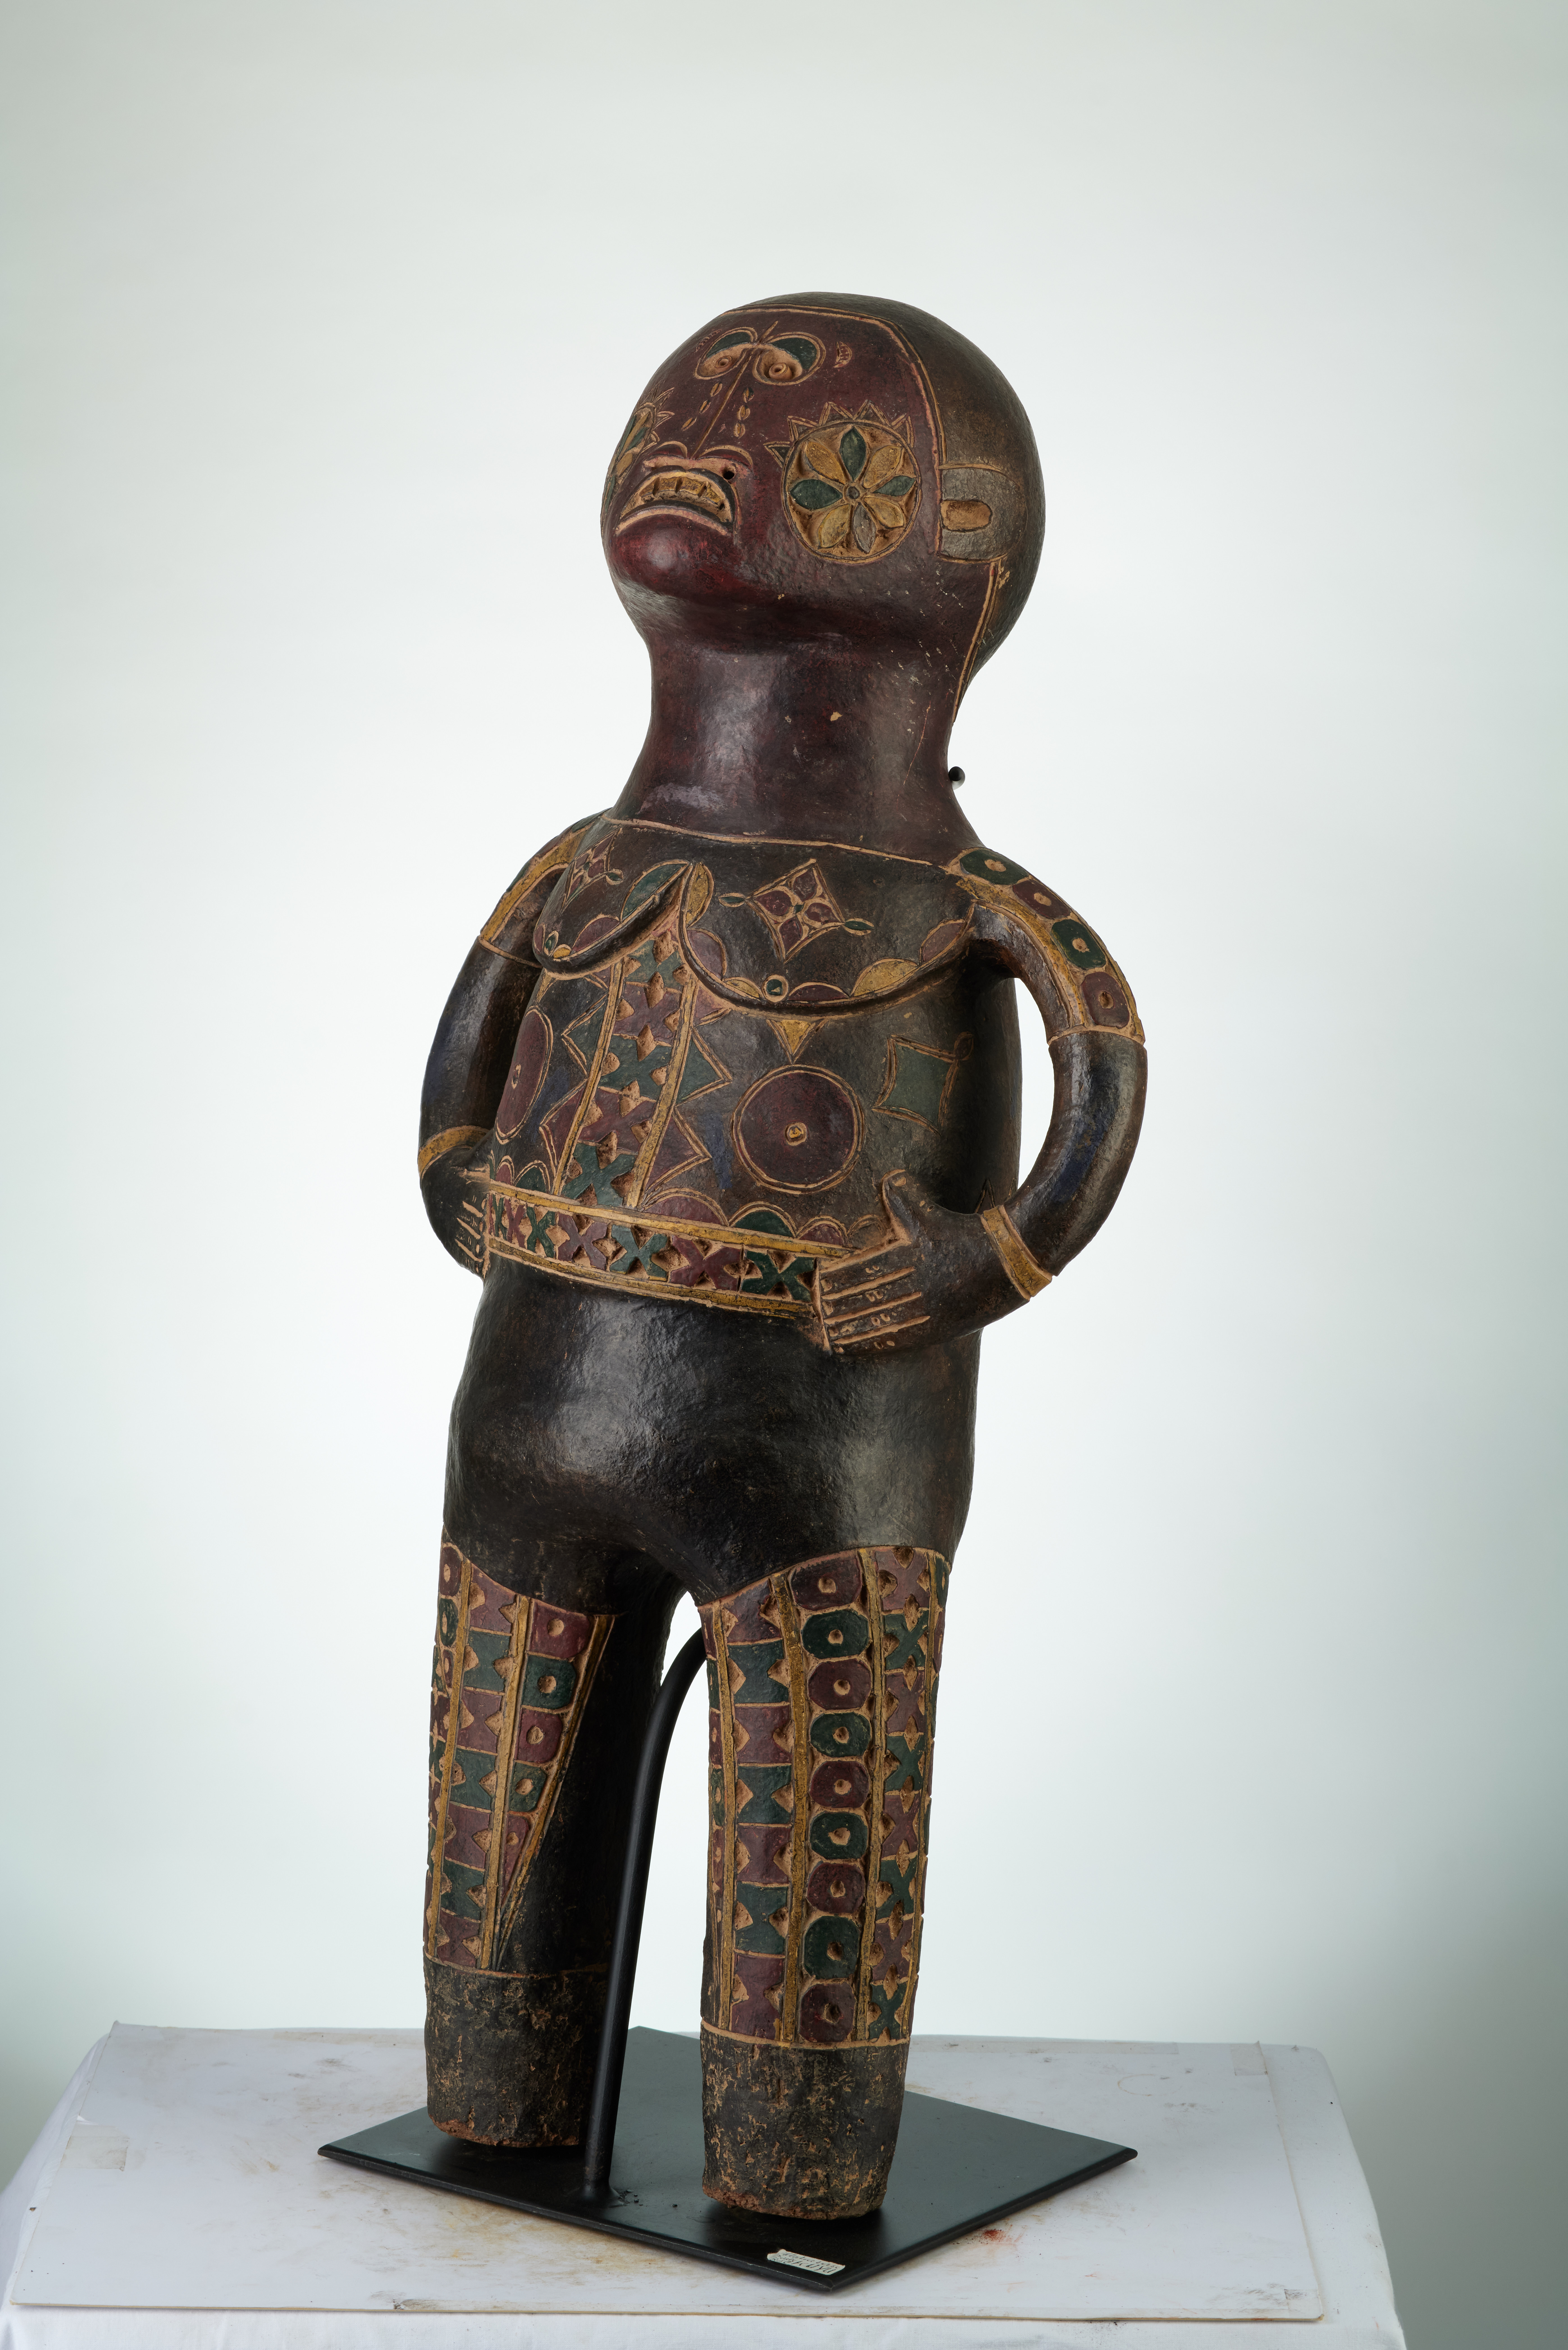  T.C.  kuyu  1834, d`afrique : rep.dem.Congo, statuette  T.C.  kuyu  1834, masque ancien africain  T.C.  kuyu  1834, art du rep.dem.Congo - Art Africain, collection privées Belgique. Statue africaine de la tribu des  T.C.  kuyu  1834, provenant du rep.dem.Congo, 1834:Terre cuite KUYU: Les kuyu sont  établi dans la R.d.C.lelong de la rivière Kuyu (CO 
 NGO) et au Gabon-Est.Il sont très spécialisé en Sculptures de terre cuite H.75cm.(col Pères blancs à Lille 1973)Milieu 20eme sc.

Beeld in aardewerk KUYU.Heel gekend voor hun beelden.Ze bevinden zich in D.R.C. en in t